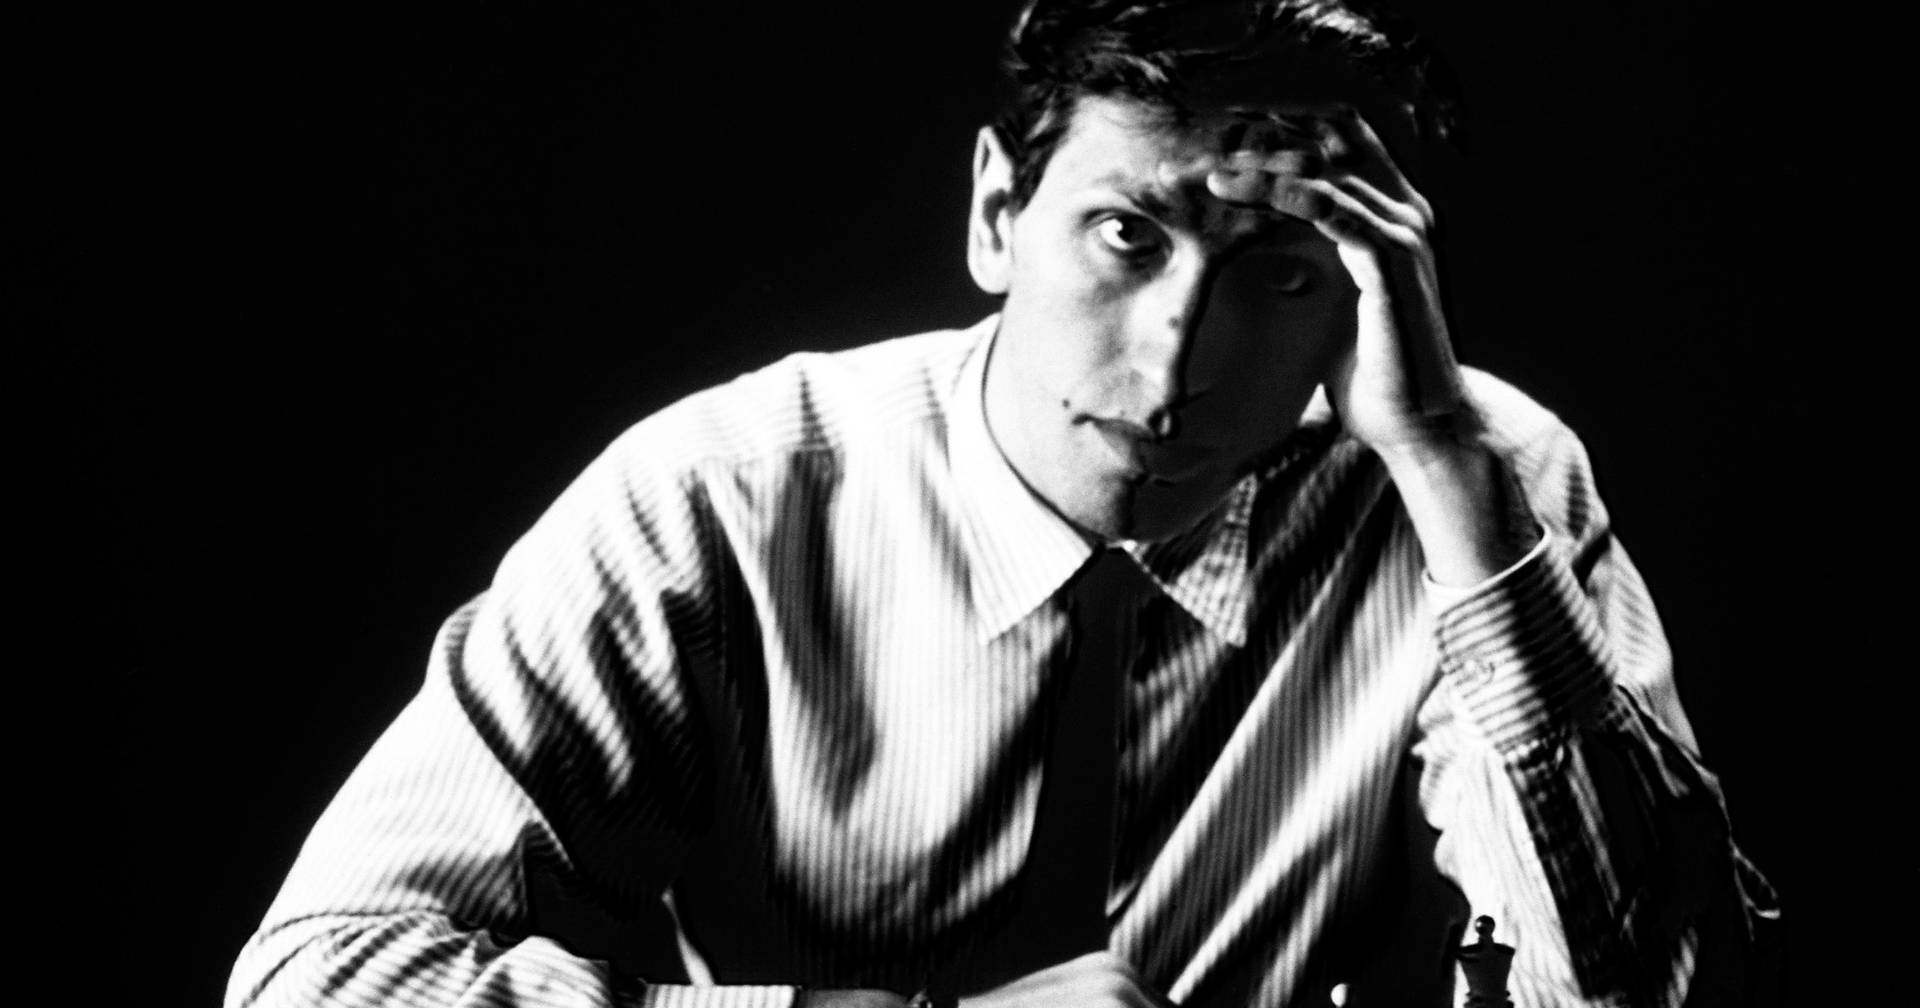 Escalada de um Campeão - Bobby Fischer 1970 - 1972 [MF José Costa